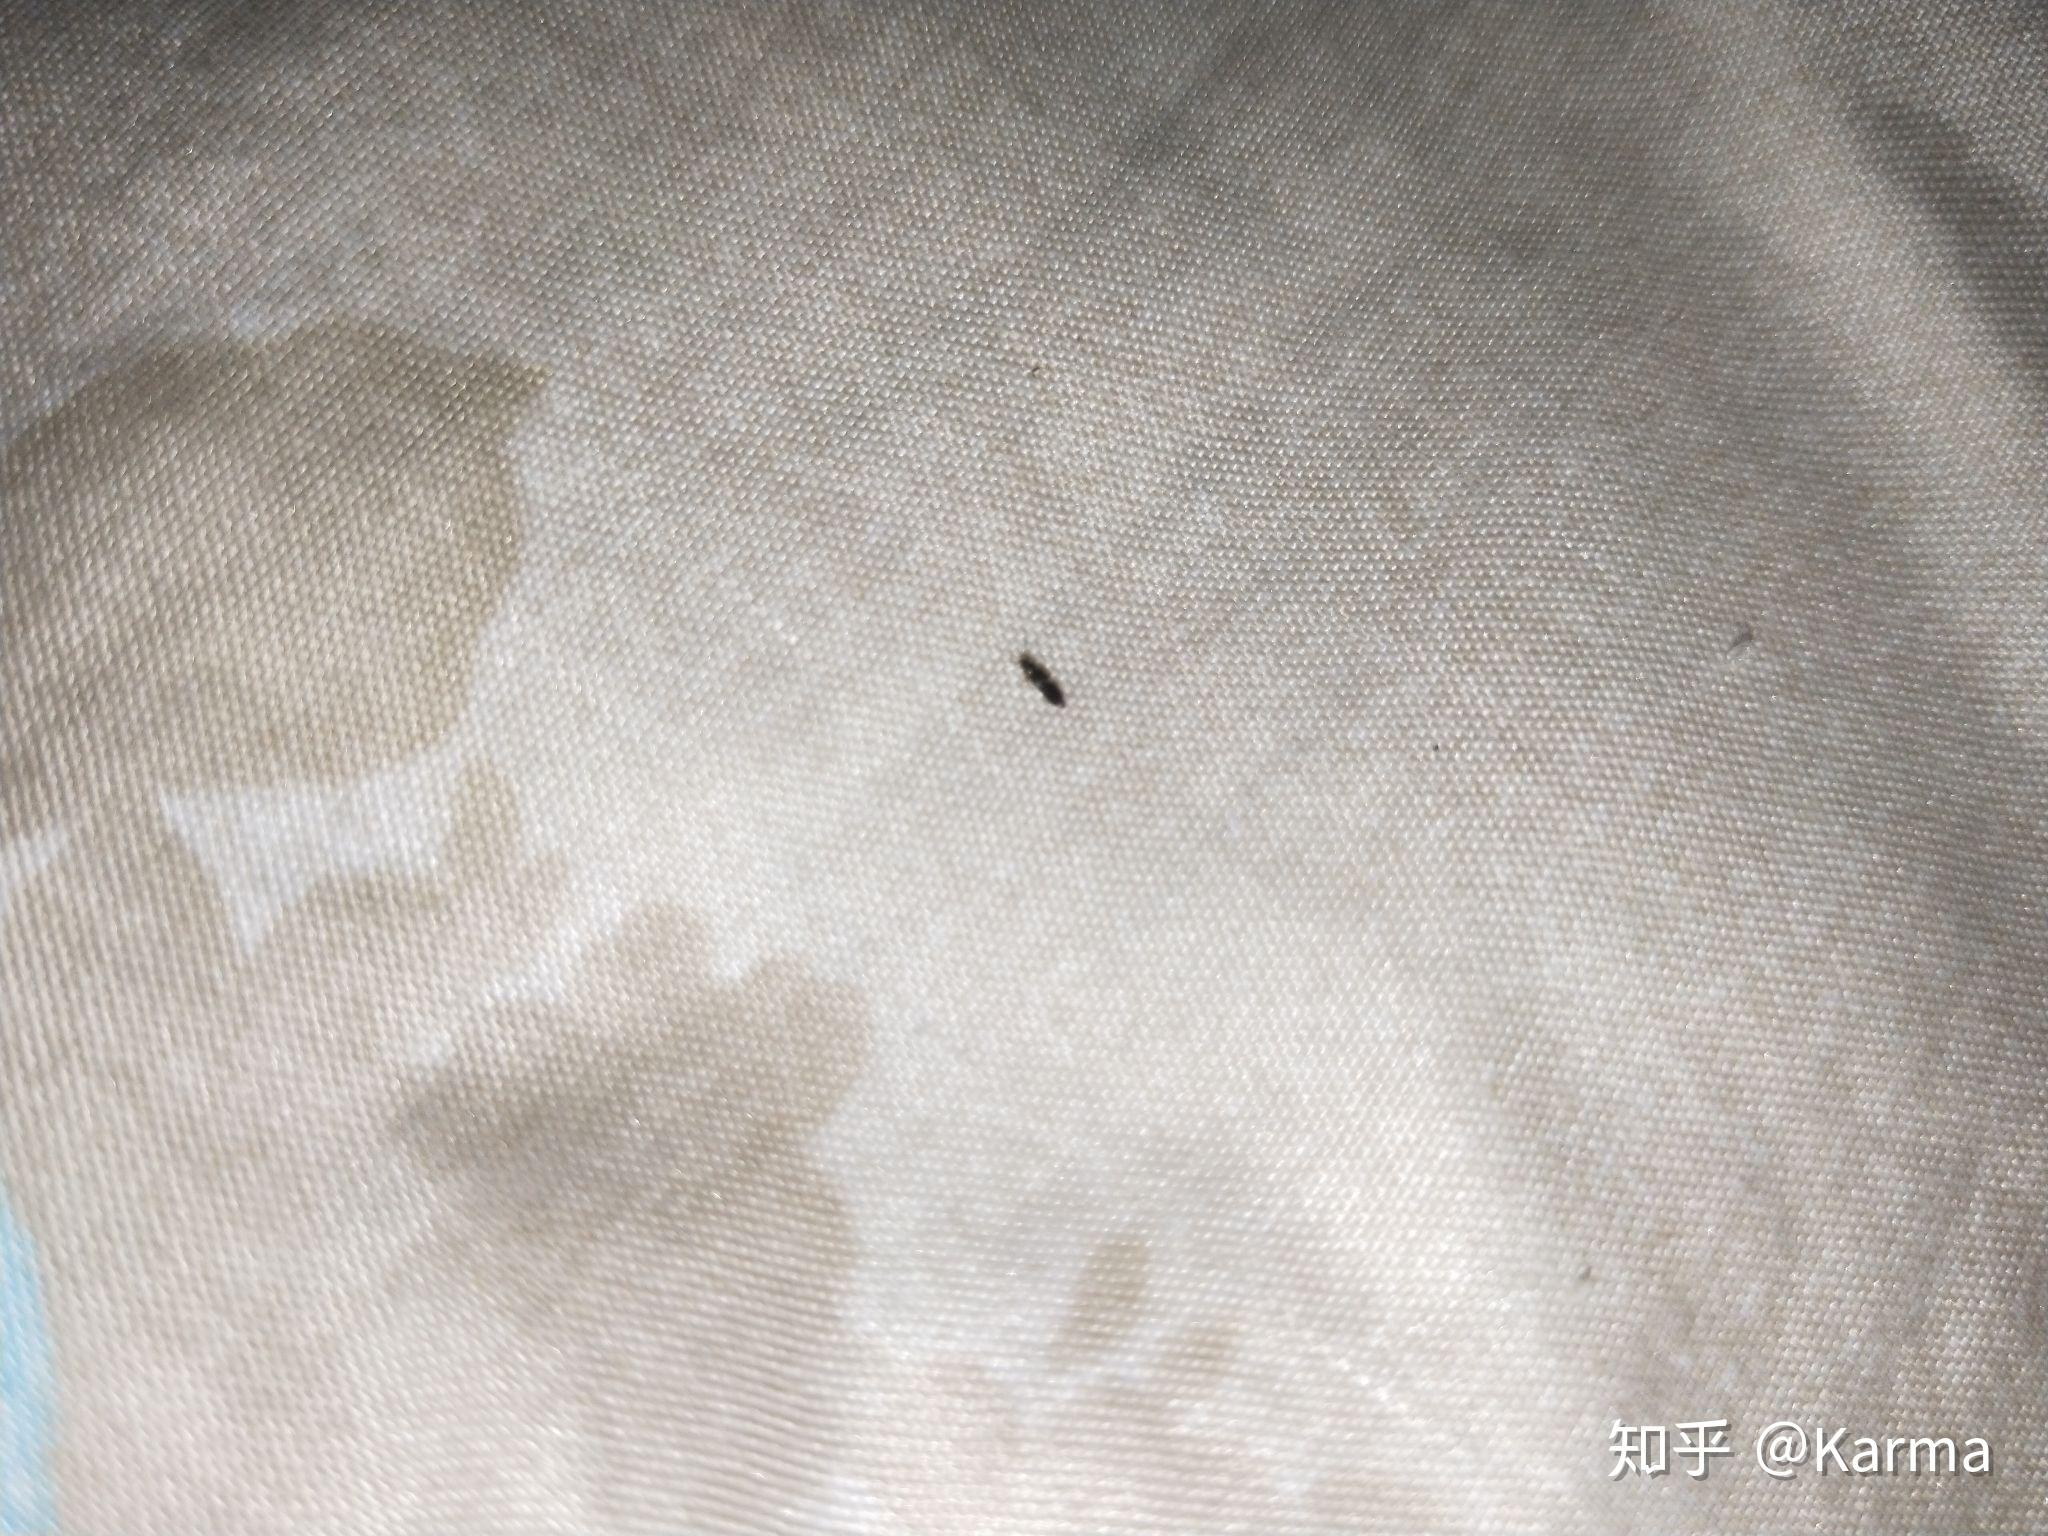 夏天家里床上经常出现一毫米的黑色小虫子,是什么虫(有图片)? 